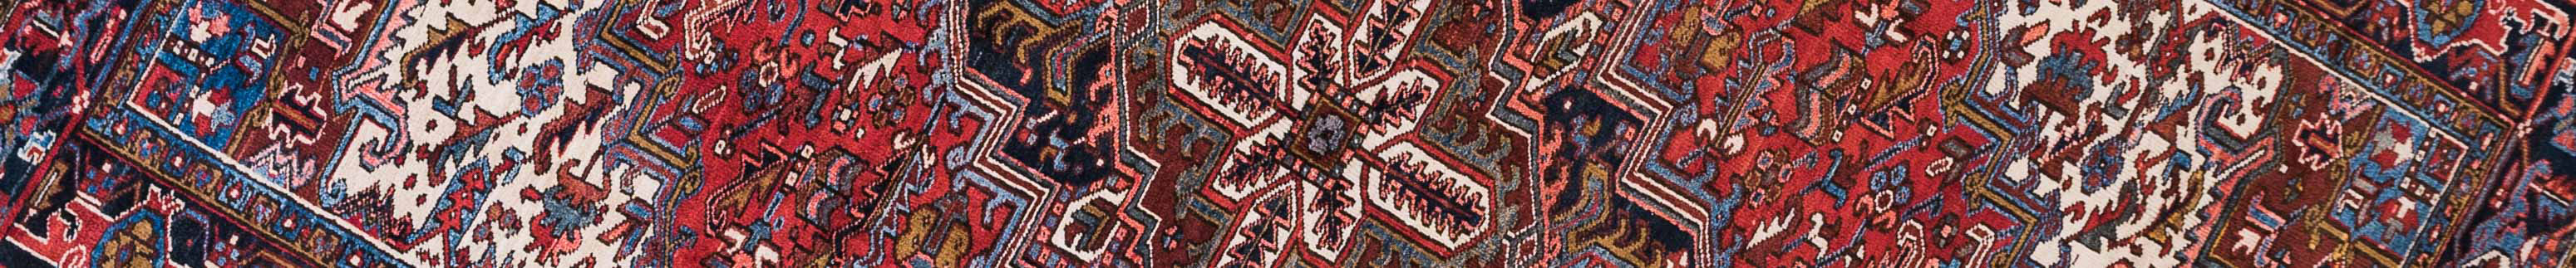 Gravan Persian Carpet Rug N1Carpet Canada Montreal Tapis Persan 2800